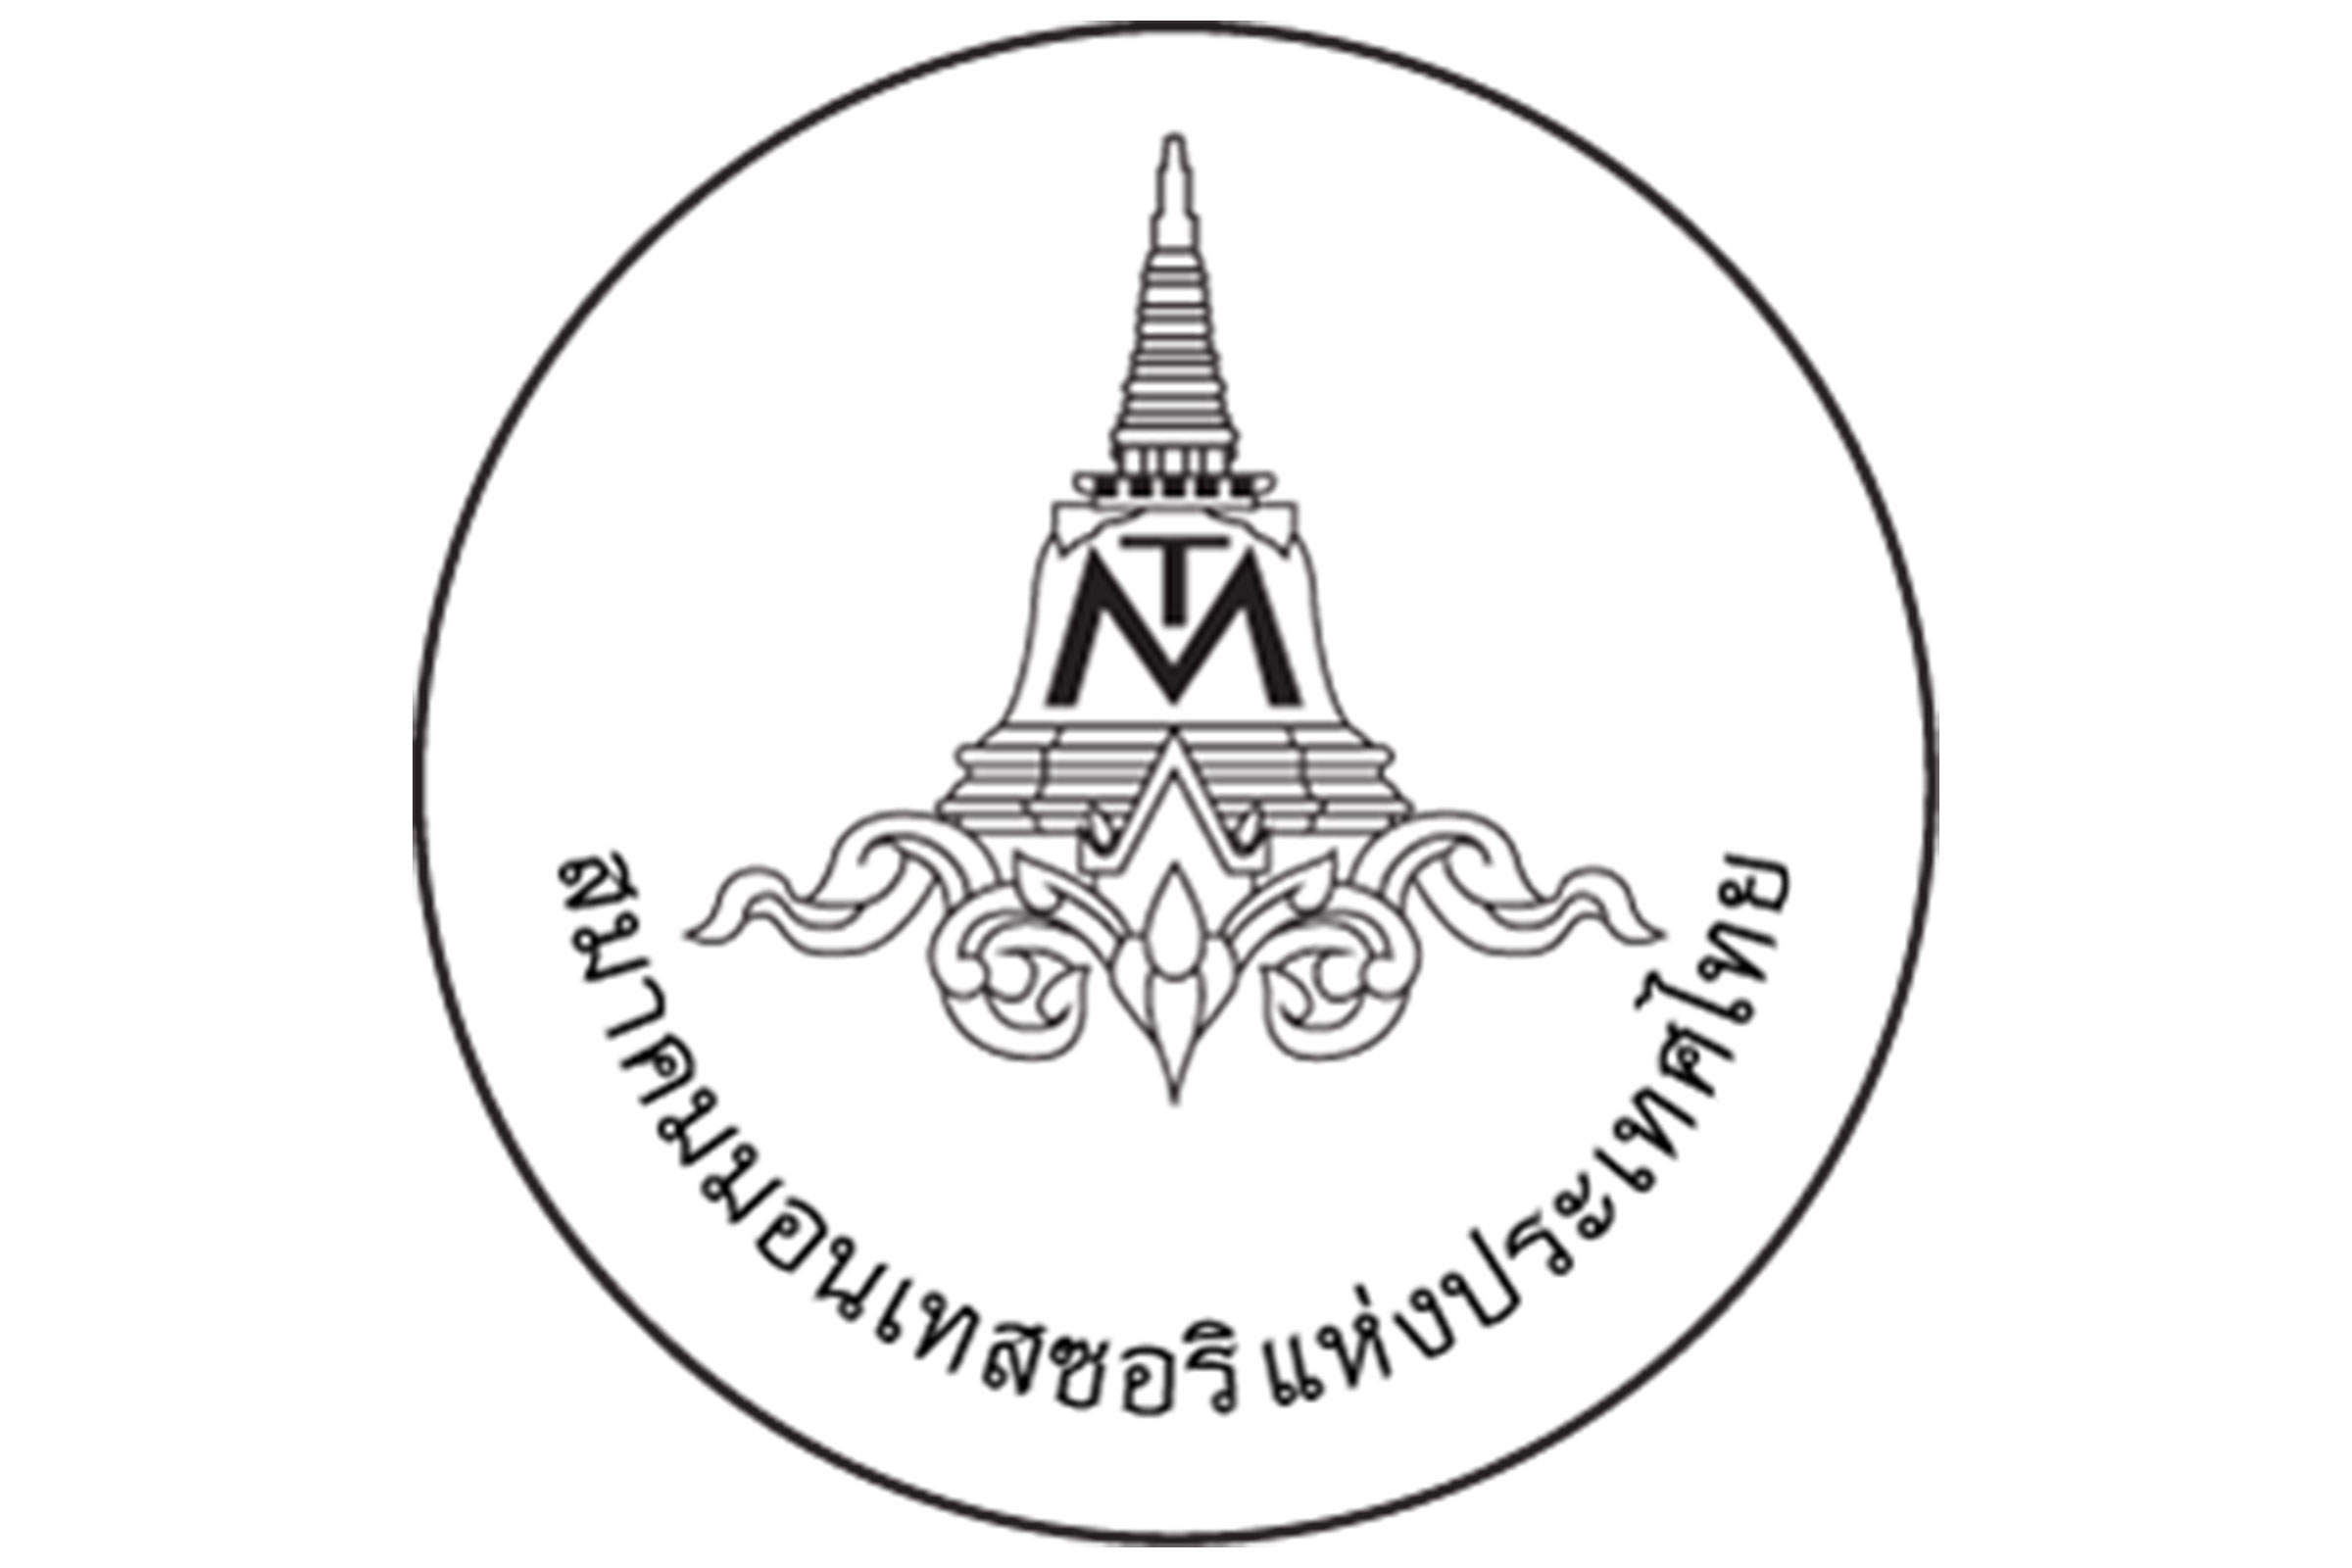 Montessori Association of Thailand logo